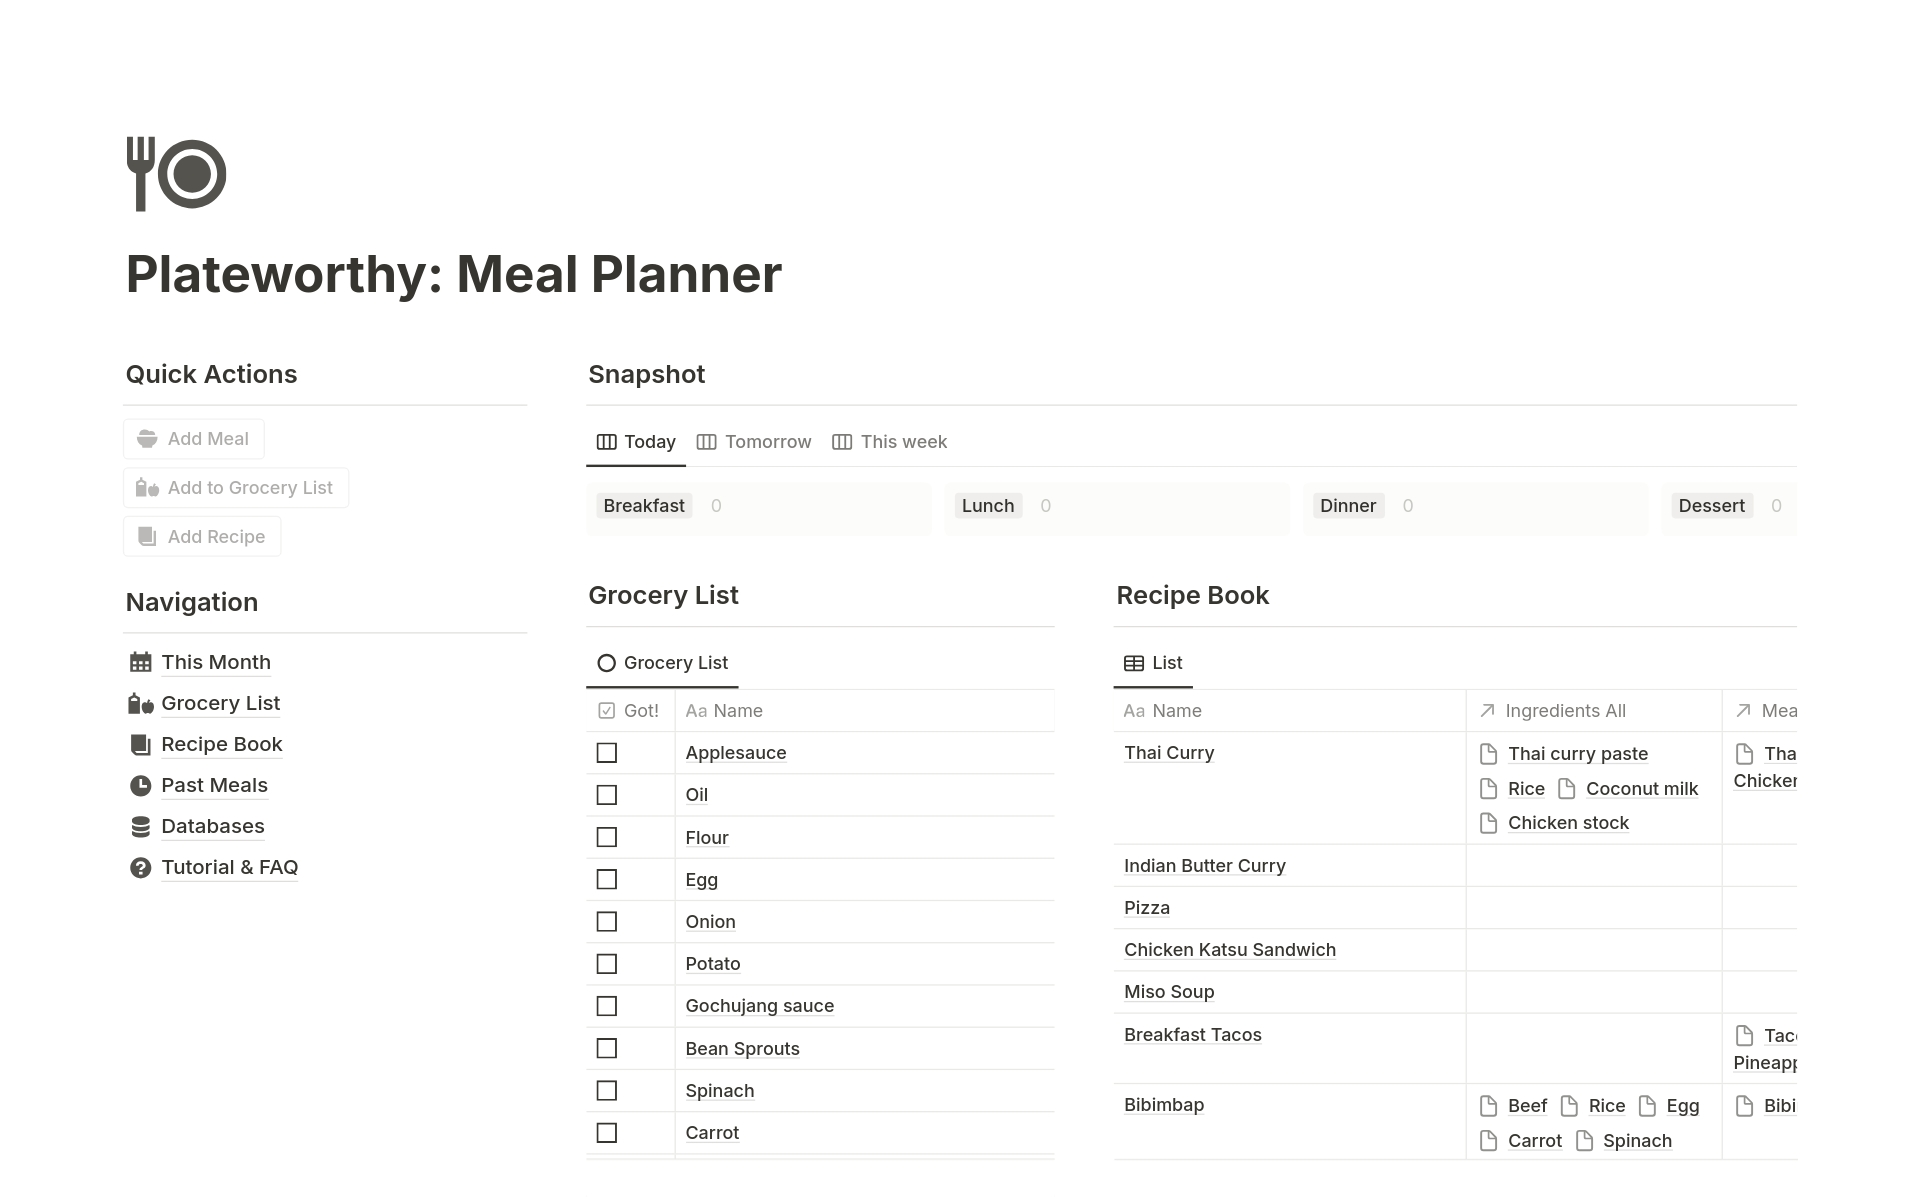 Uma prévia do modelo para Plateworthy: Meal Planner